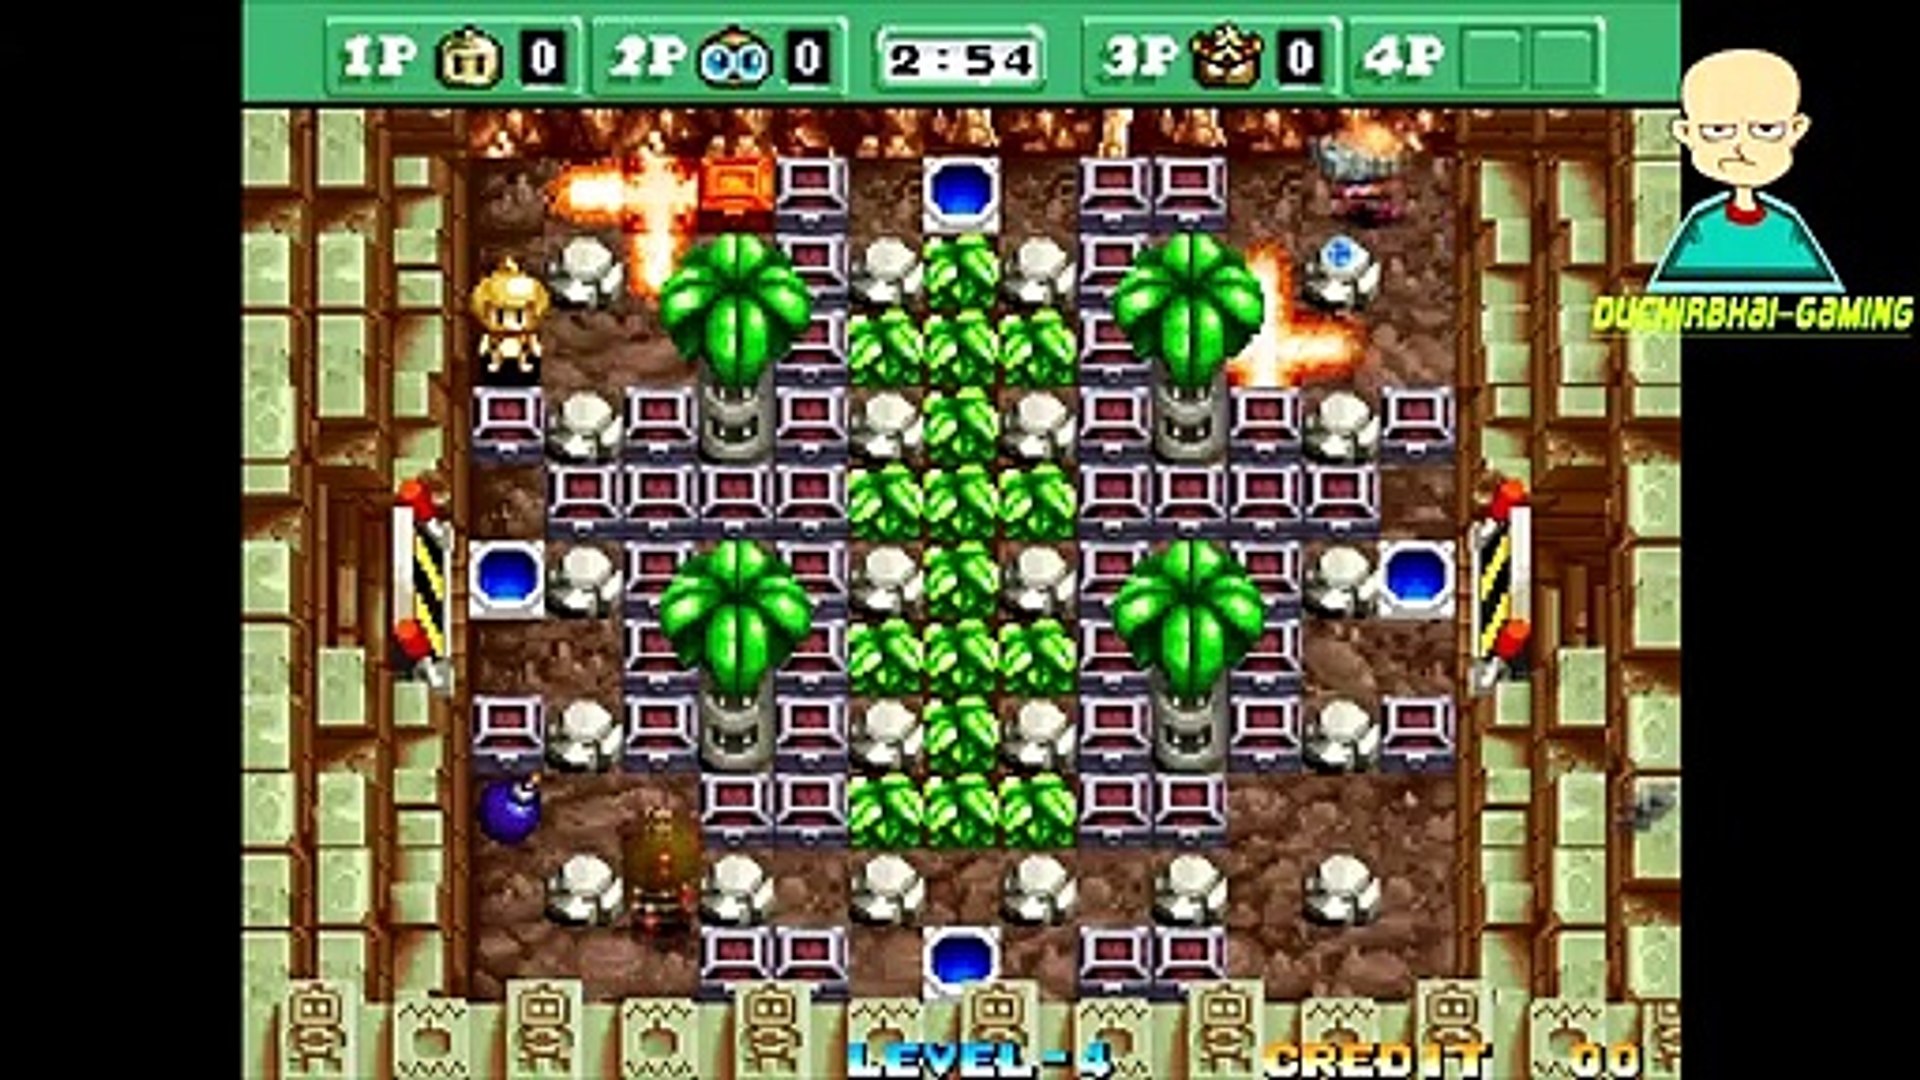 Neo Bomberman Gaming | DuchirBhai-Gaming | Funny Gaming